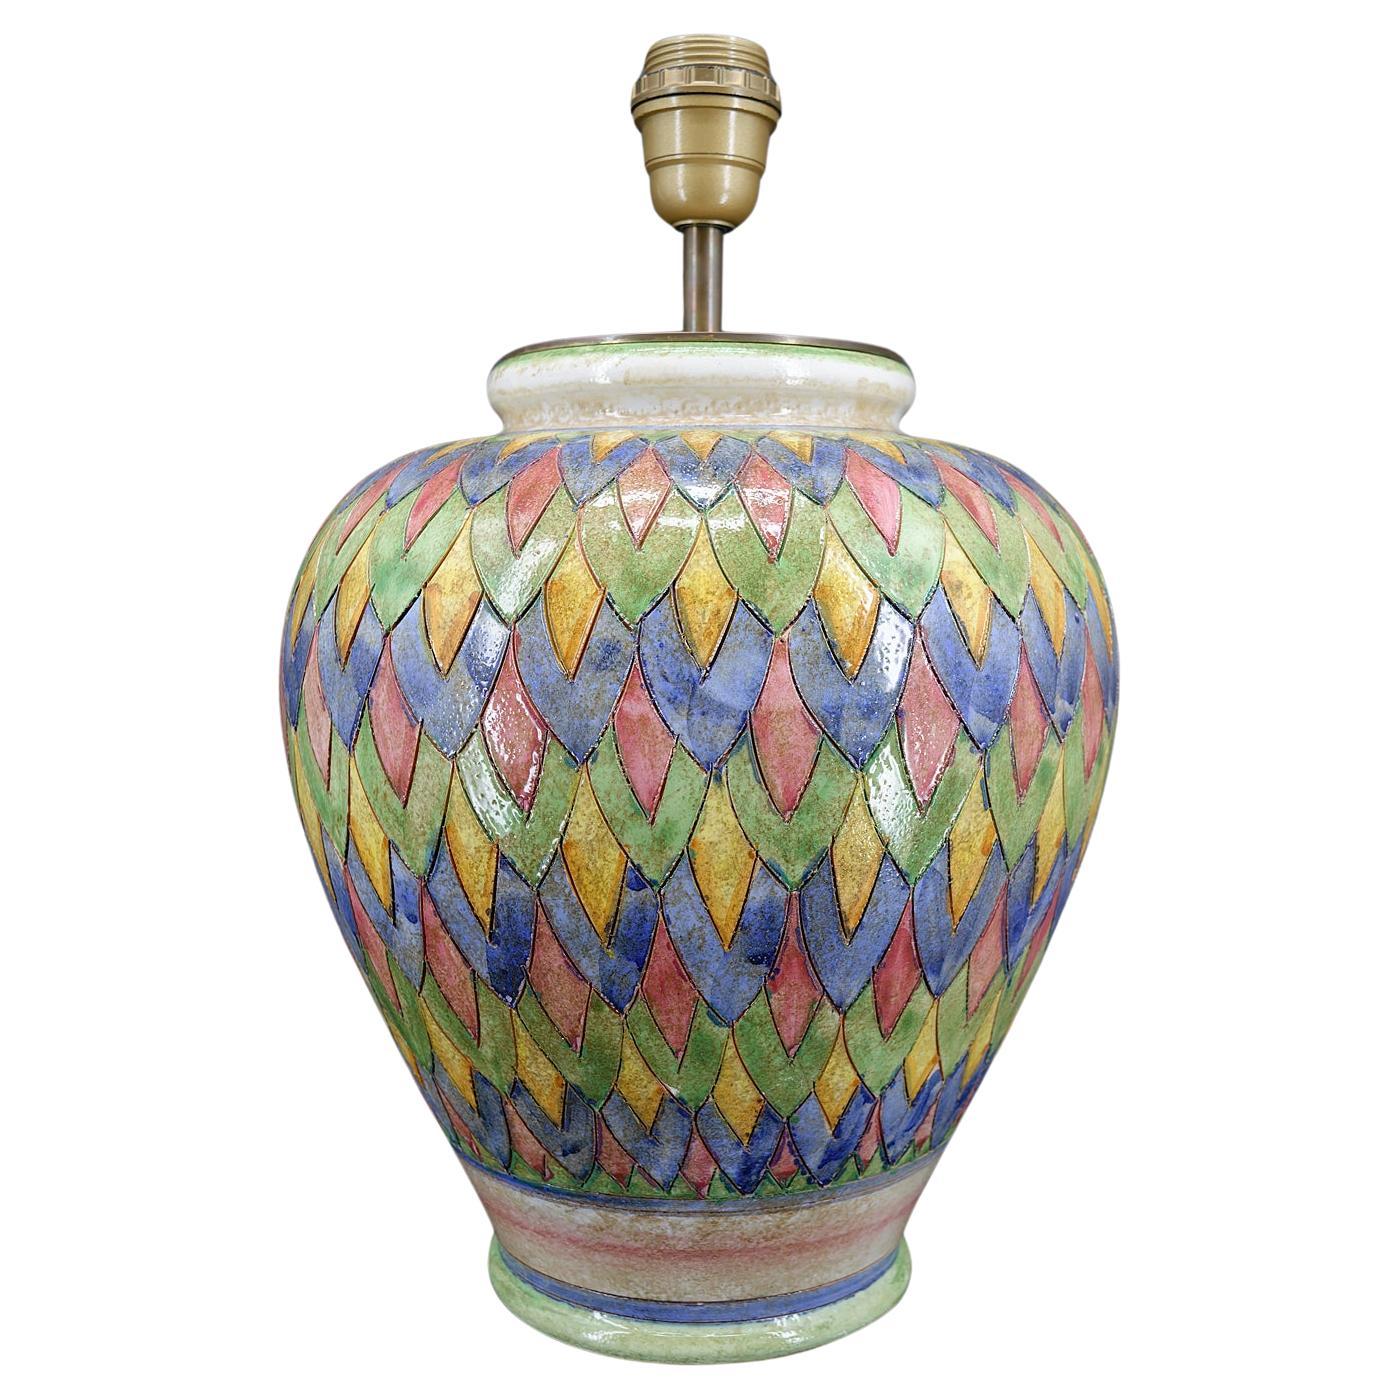 Deruta ceramic lamp, Italy, circa 1970-1980